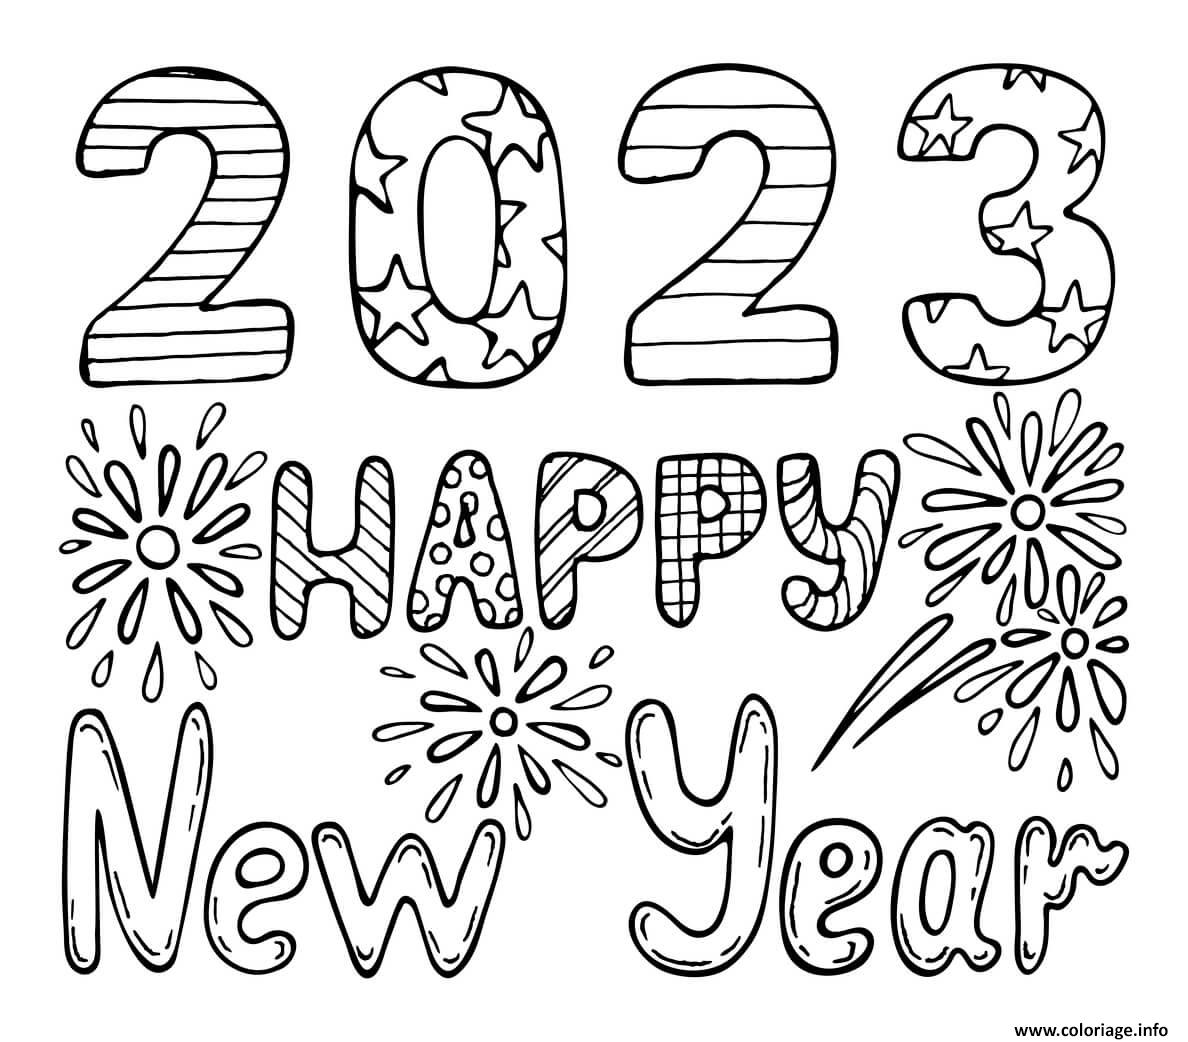 Coloriage 2023 Happy New Year Stars Dessin Bonne Annee Nouvel An à imprimer